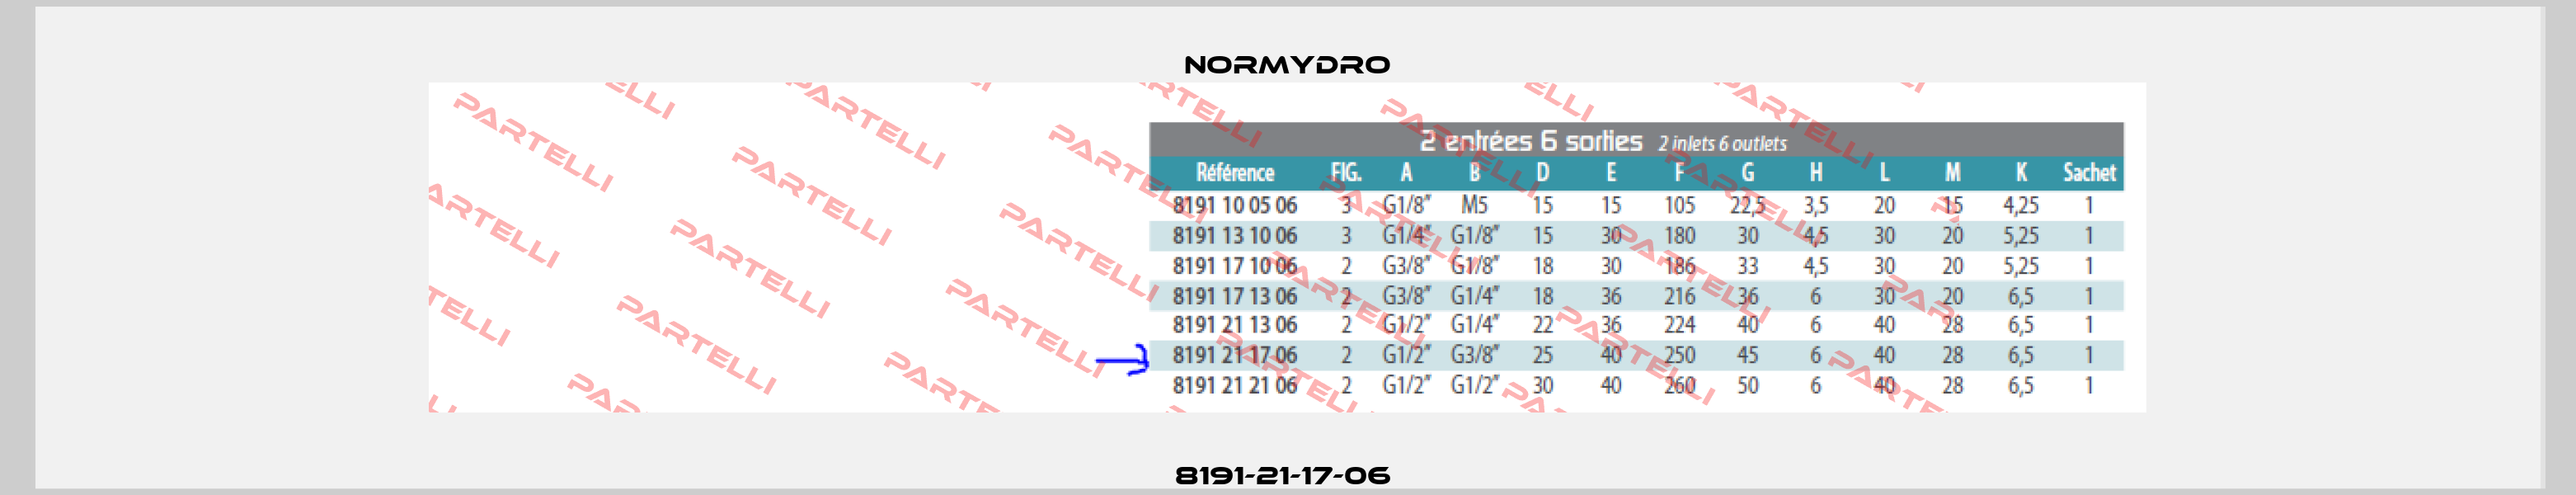 8191-21-17-06  Normydro